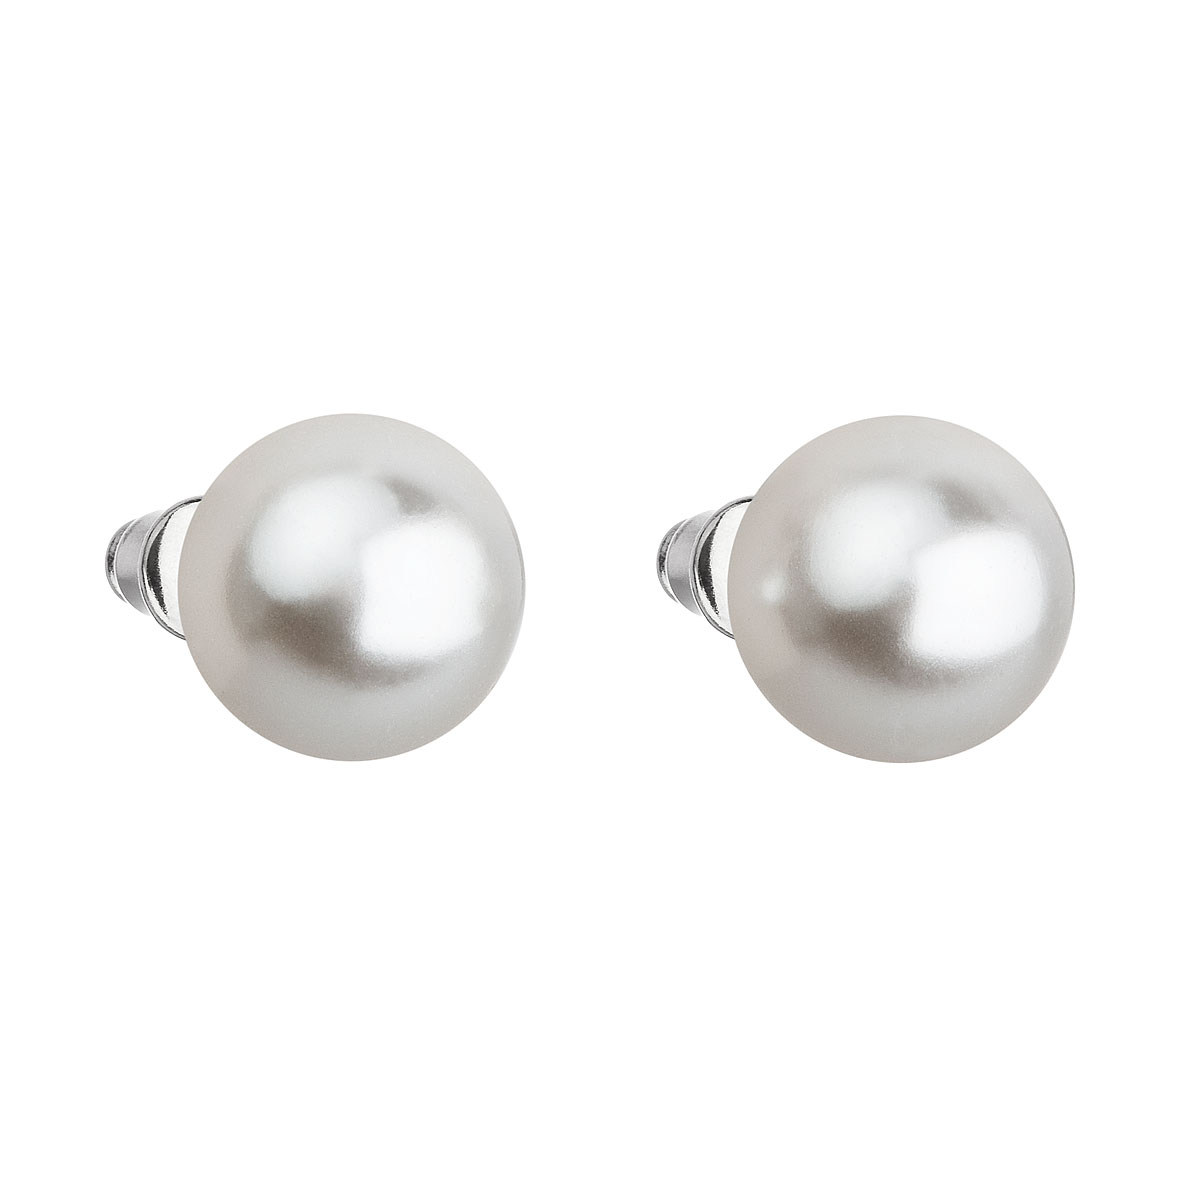 Evolution Group Náušnice bižuterie s perlou bílé kulaté 71069.1